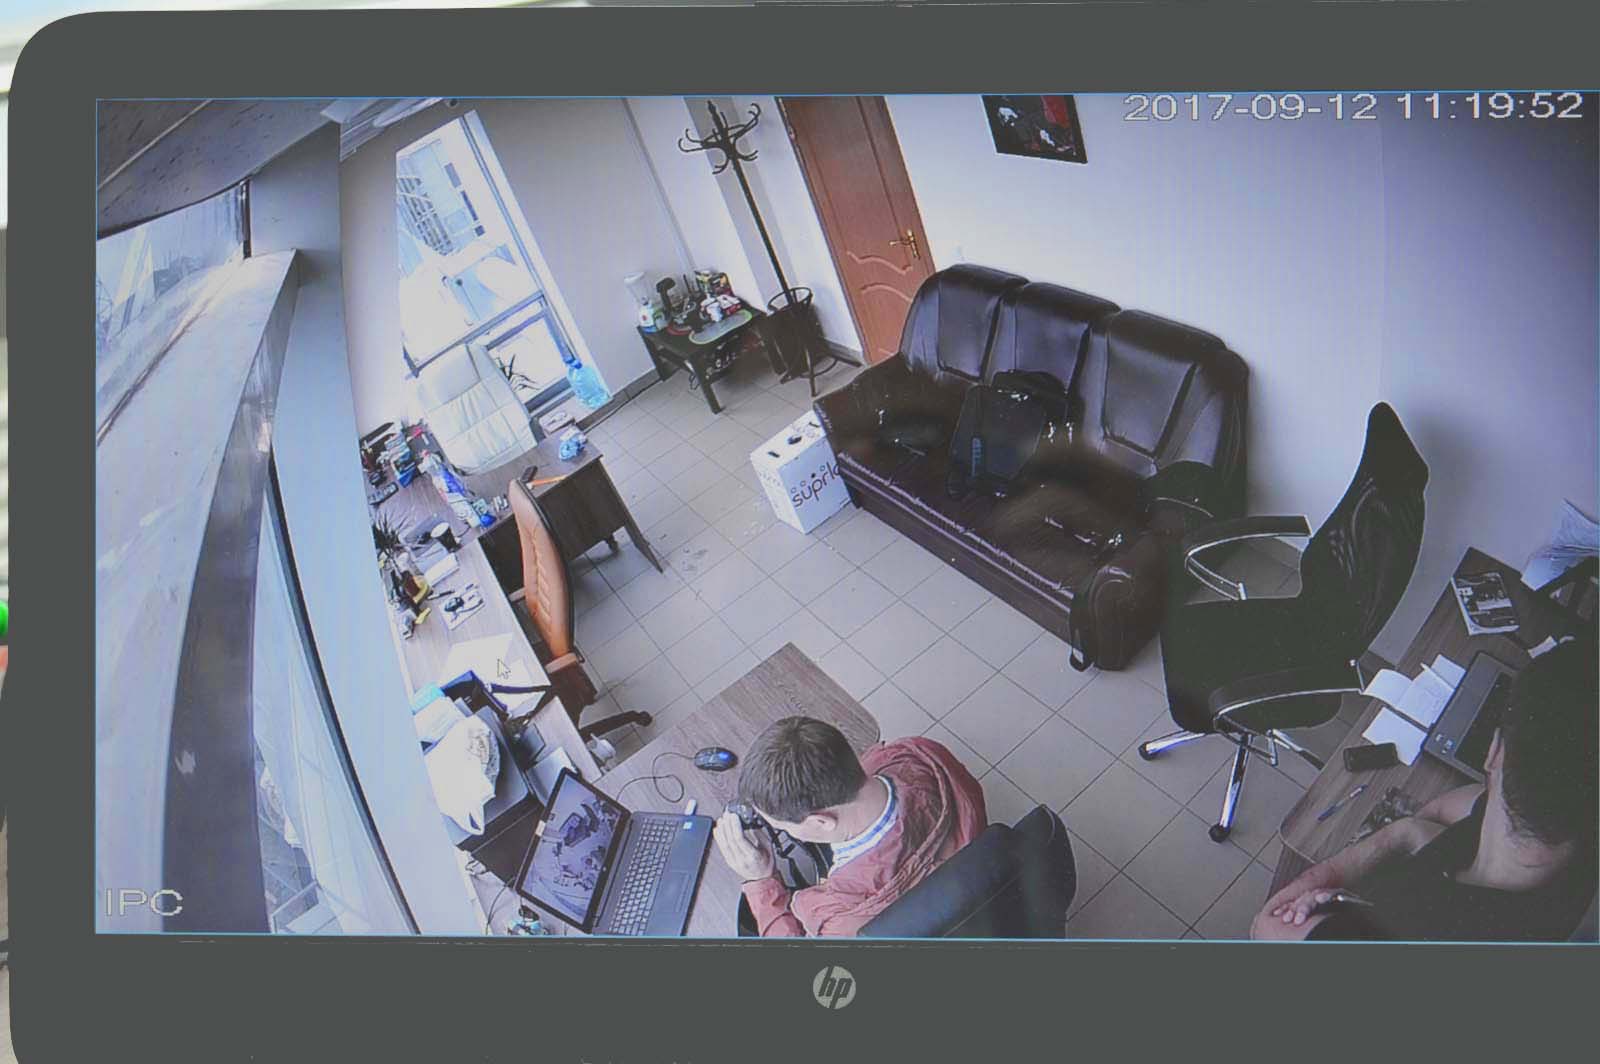 Видеонаблюдение в комнате женского общежития